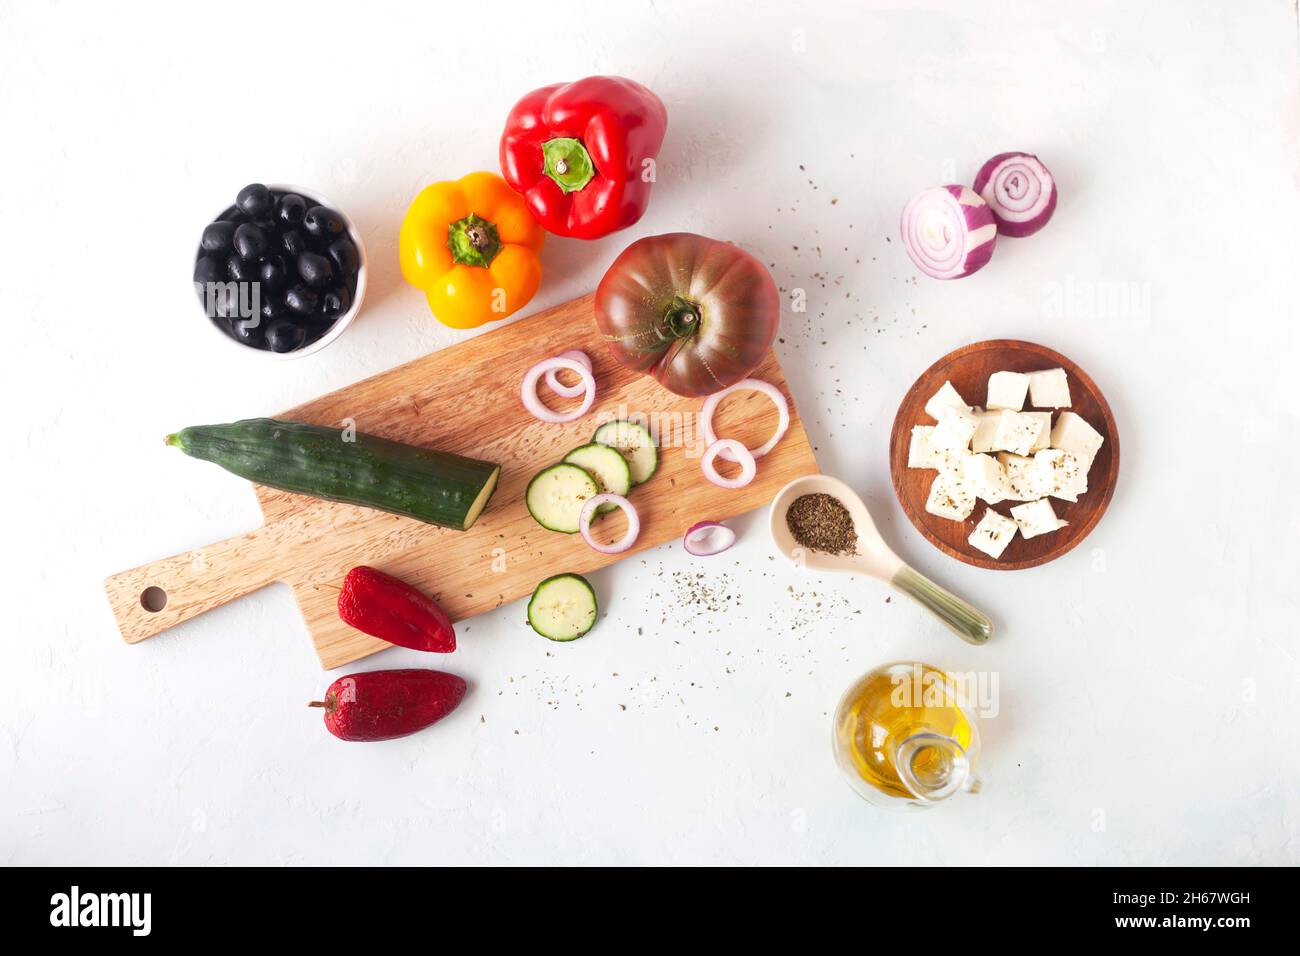 insalata greca ingredienti su sfondo bianco, ricetta originale, vista dall'alto Foto Stock